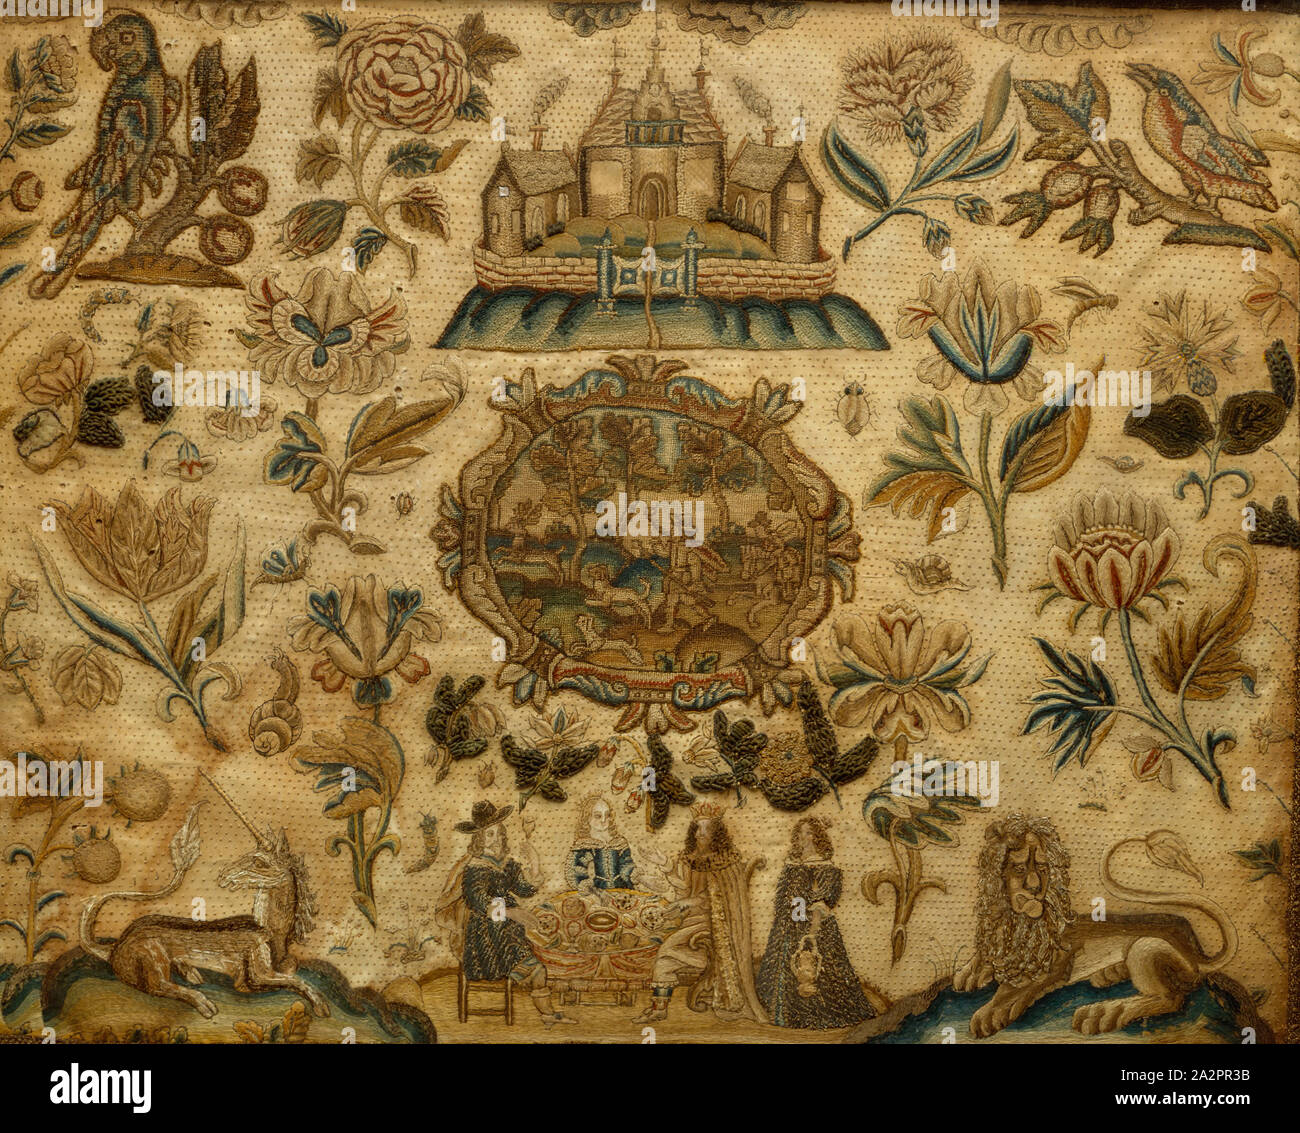 Unbekannt (Englisch), Esther, Königin und König Anasuerus an einem Bankett, 1640/1650, White Satin, gelber Seide., gerahmt: 15 3/4 x 19 x 1 cm. (40 x 48,26 x 3,18 cm Stockfoto